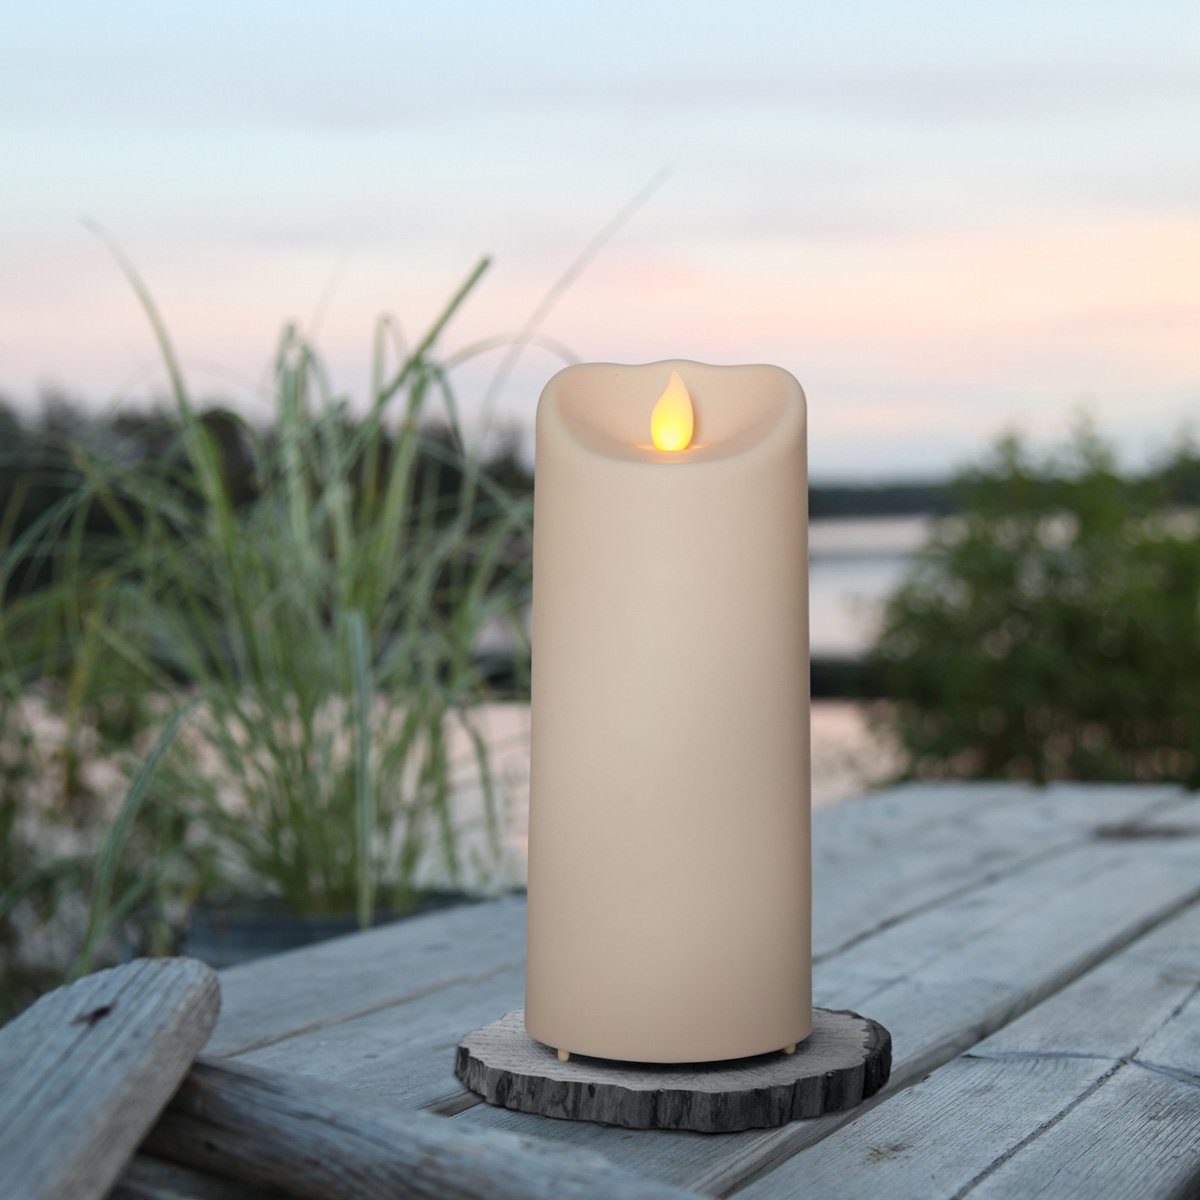 STAR TRADING LED-Kerze LED Kerze mit bewegter Flamme outdoor Kunststoff -  H: 17,5cm D: 7,5cm - Timer - creme